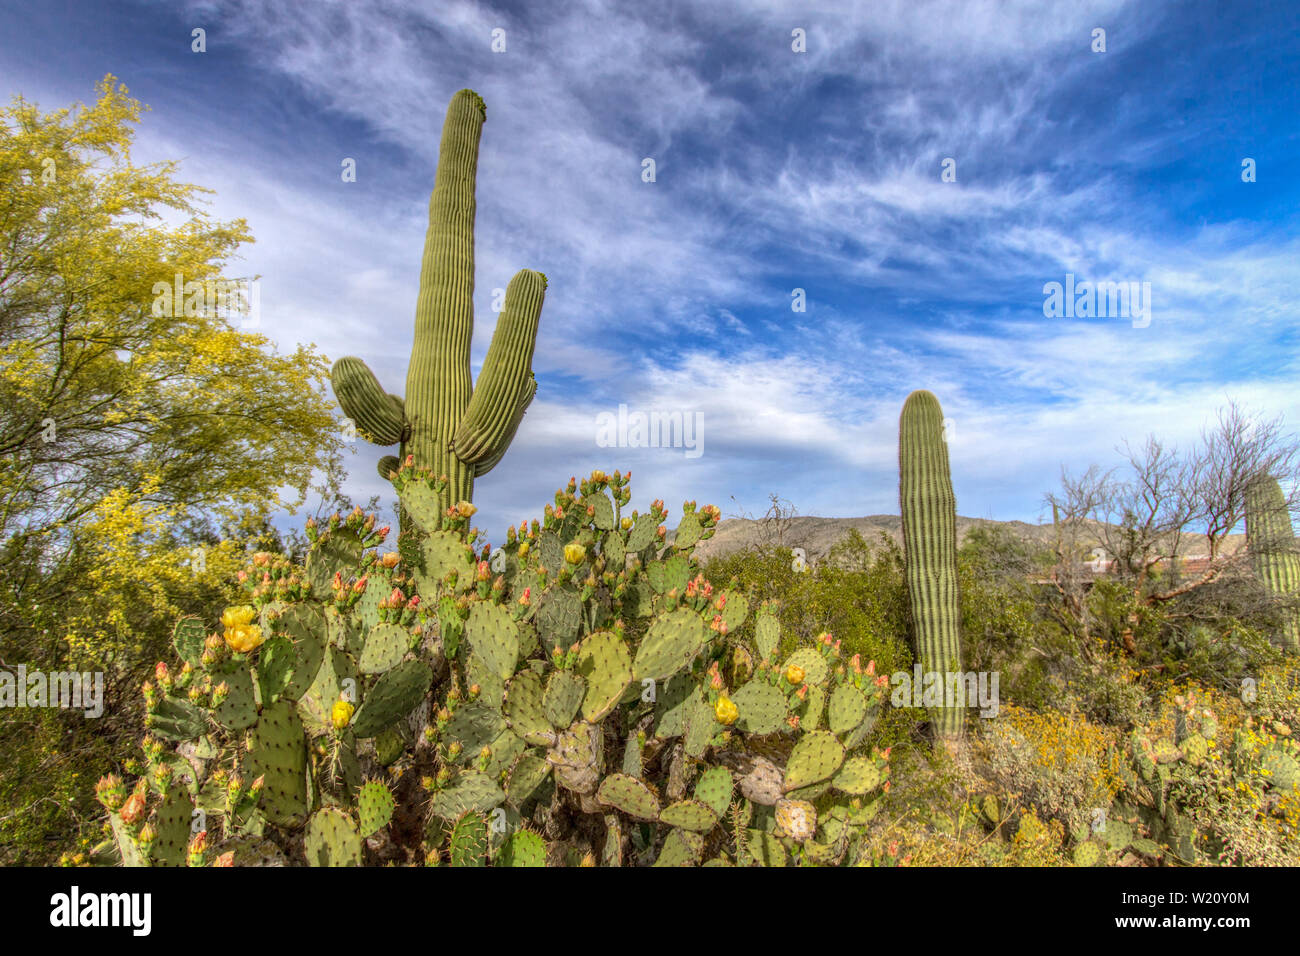 Wüstenlandschaft Mit Wildblumen. Kaktus aus Kaktus mit Kakteen und die mächtigen Saguaro-Kakteen blühen unter einem wunderschönen blauen Himmel..Saguaro National Park, Tucson, Arizona Stockfoto